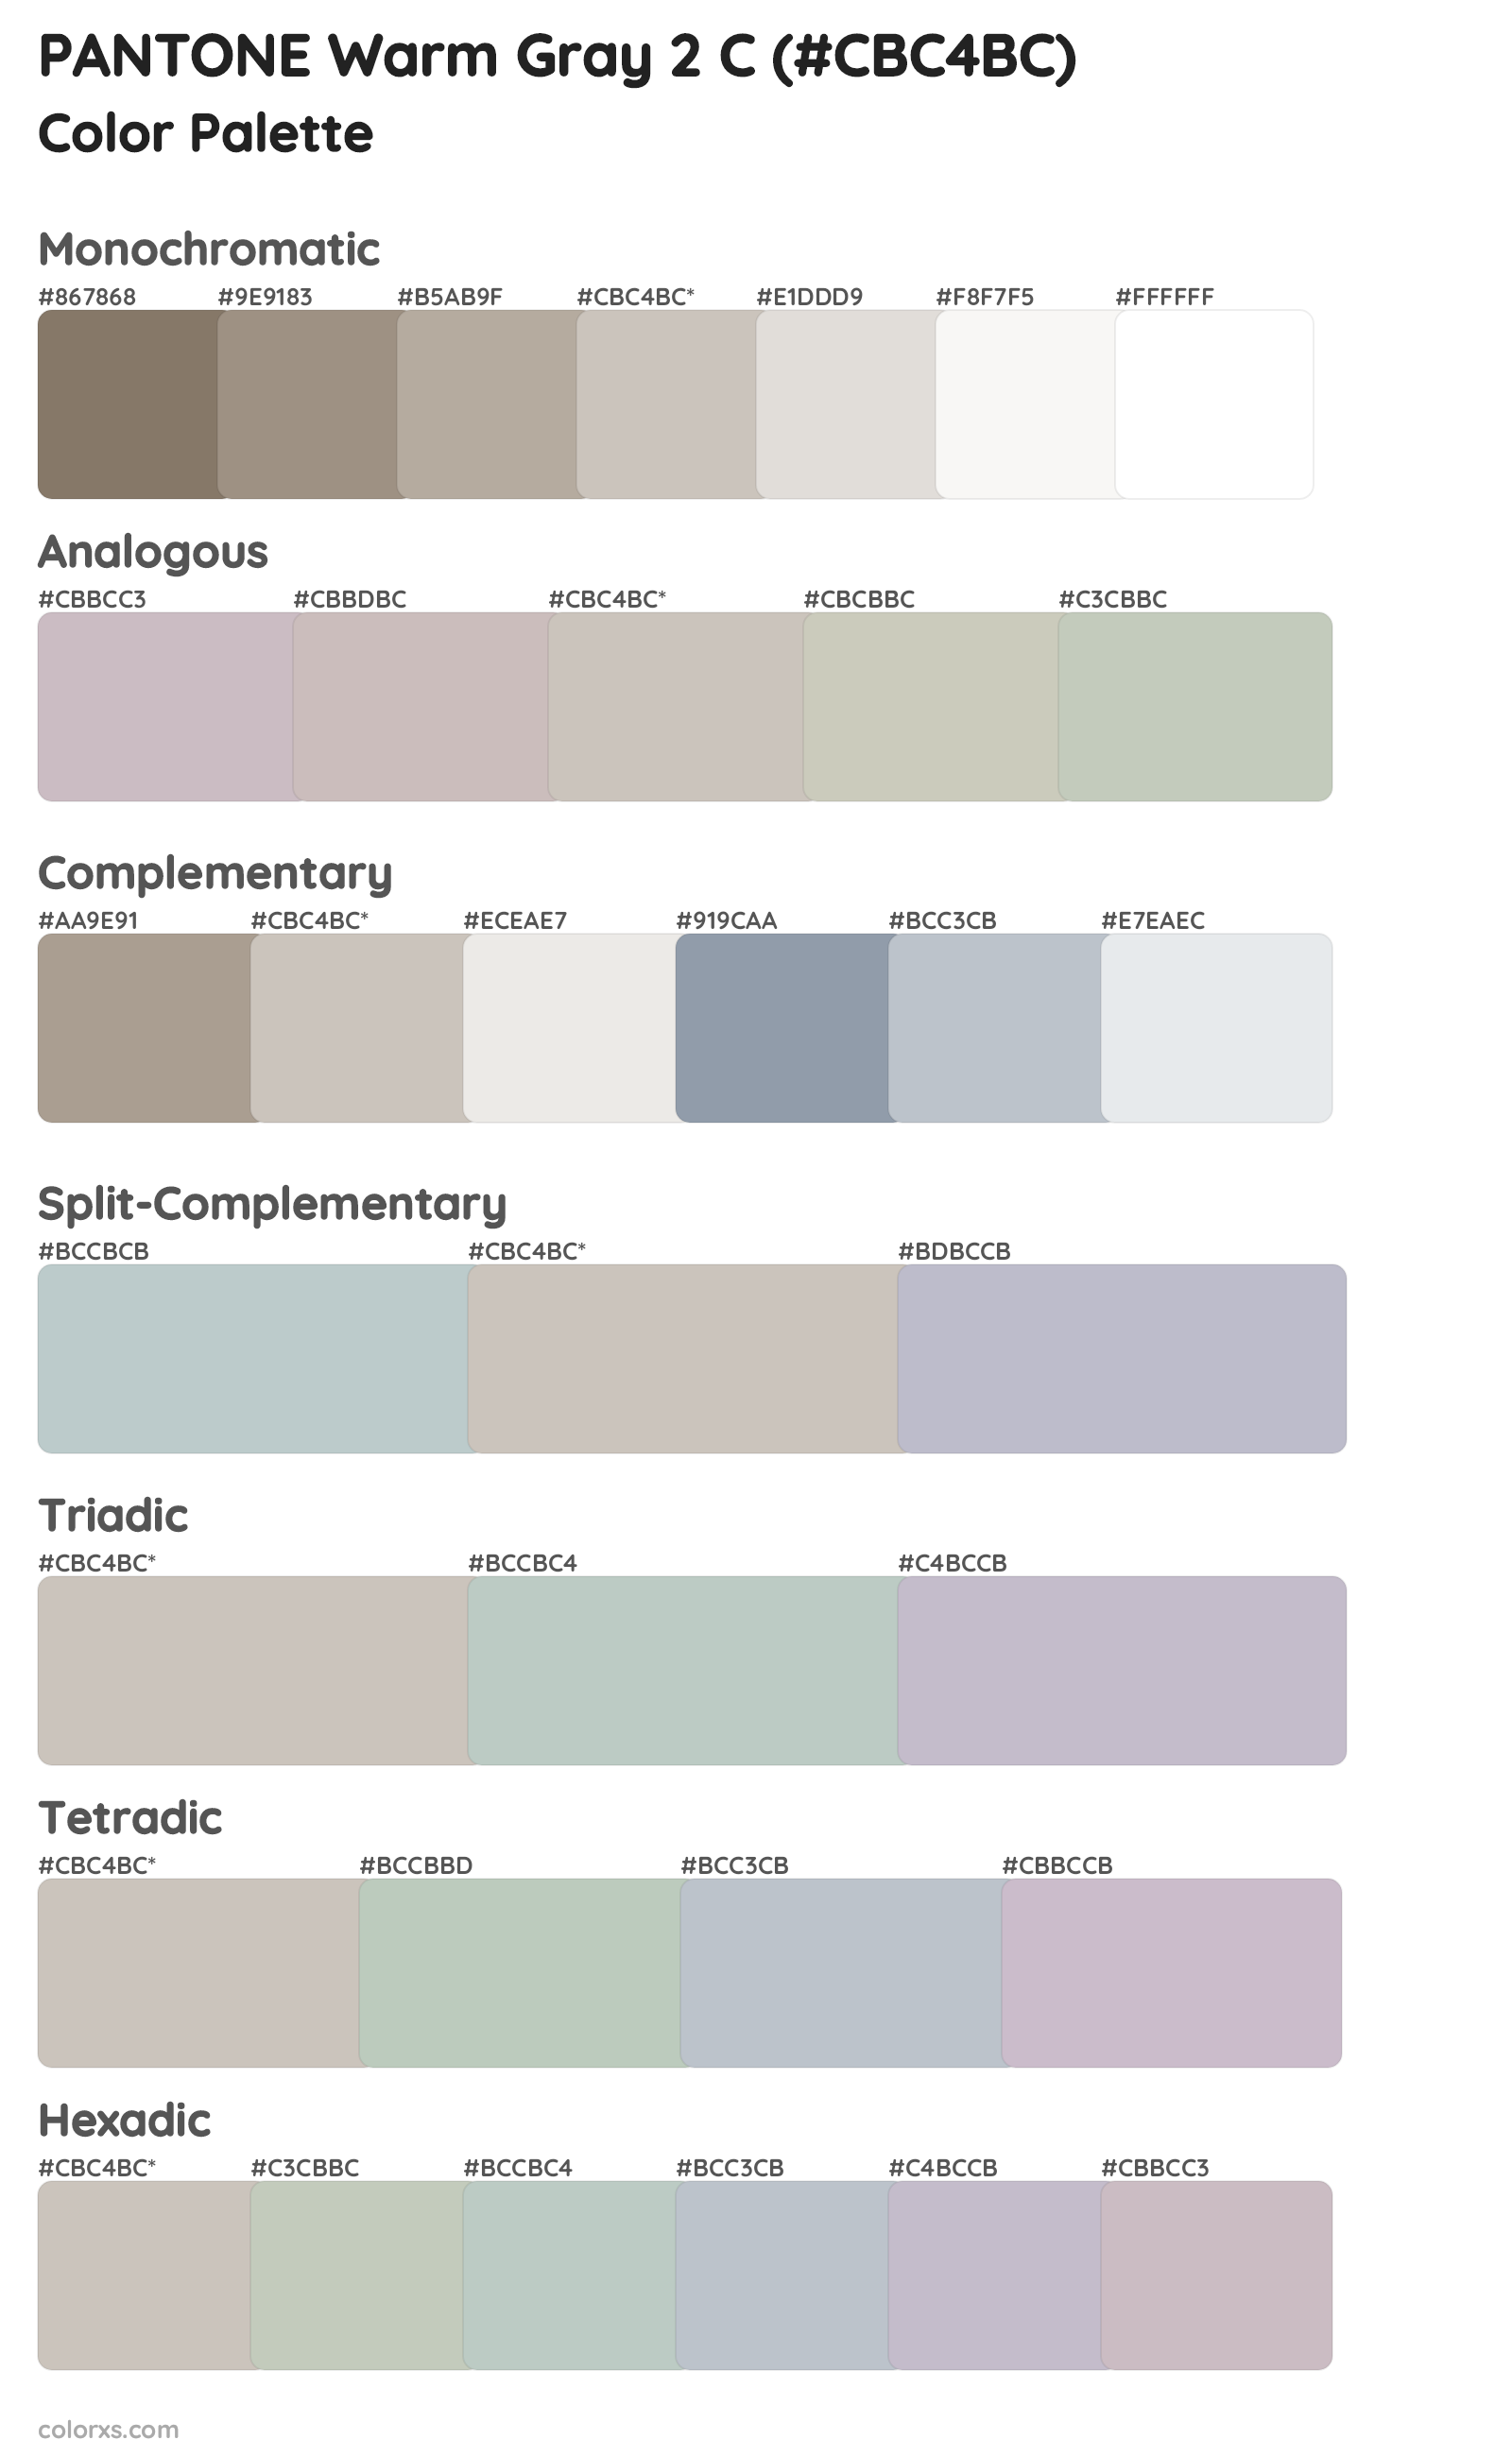 PANTONE Warm Gray 2 C Color Scheme Palettes